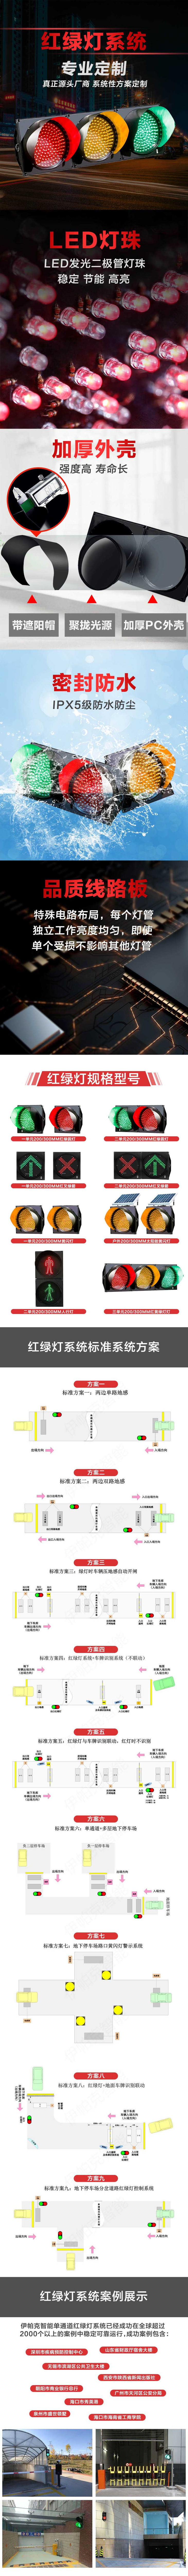 停车场红绿灯智能控制系统